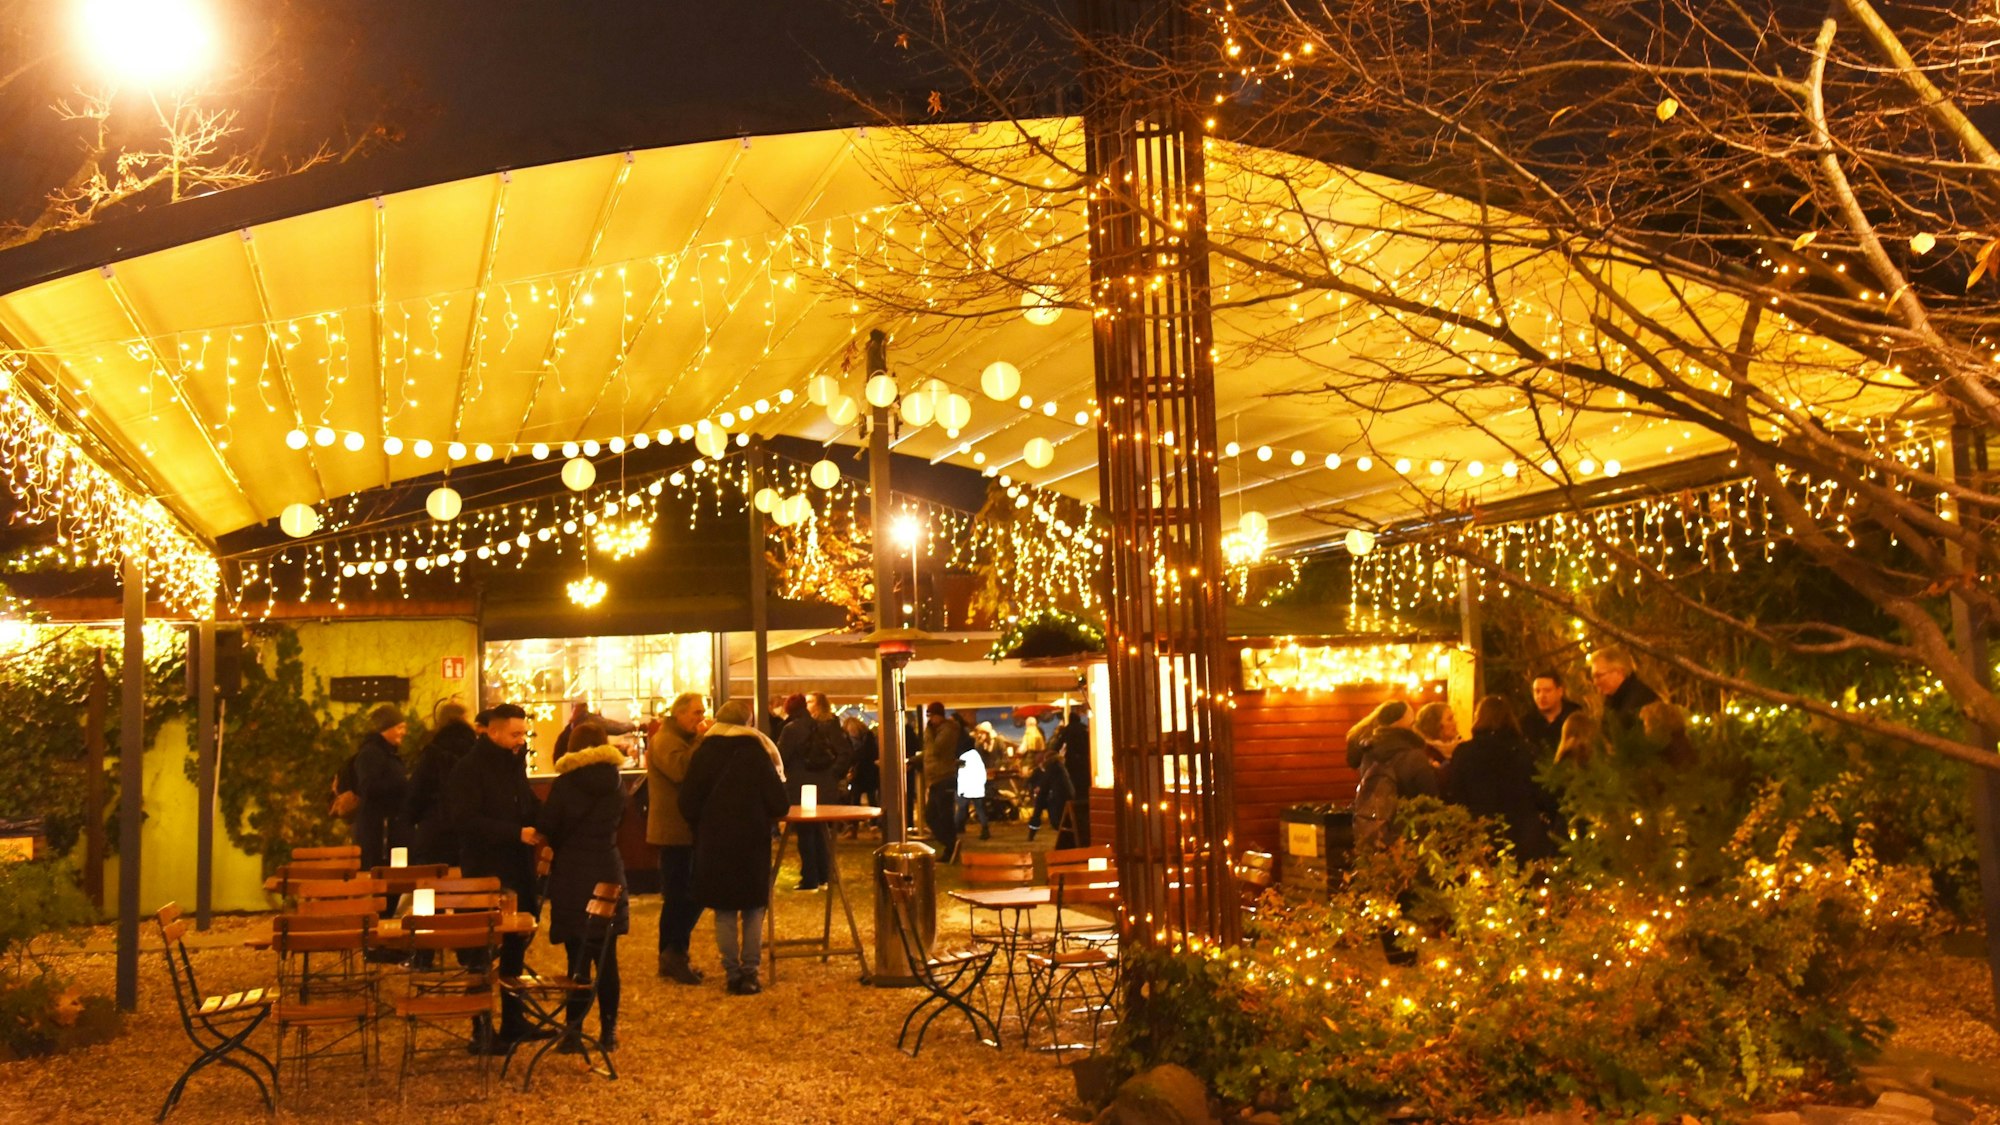 Weihnachtsmarkt in Ehrenfeld im Herbrand´s.